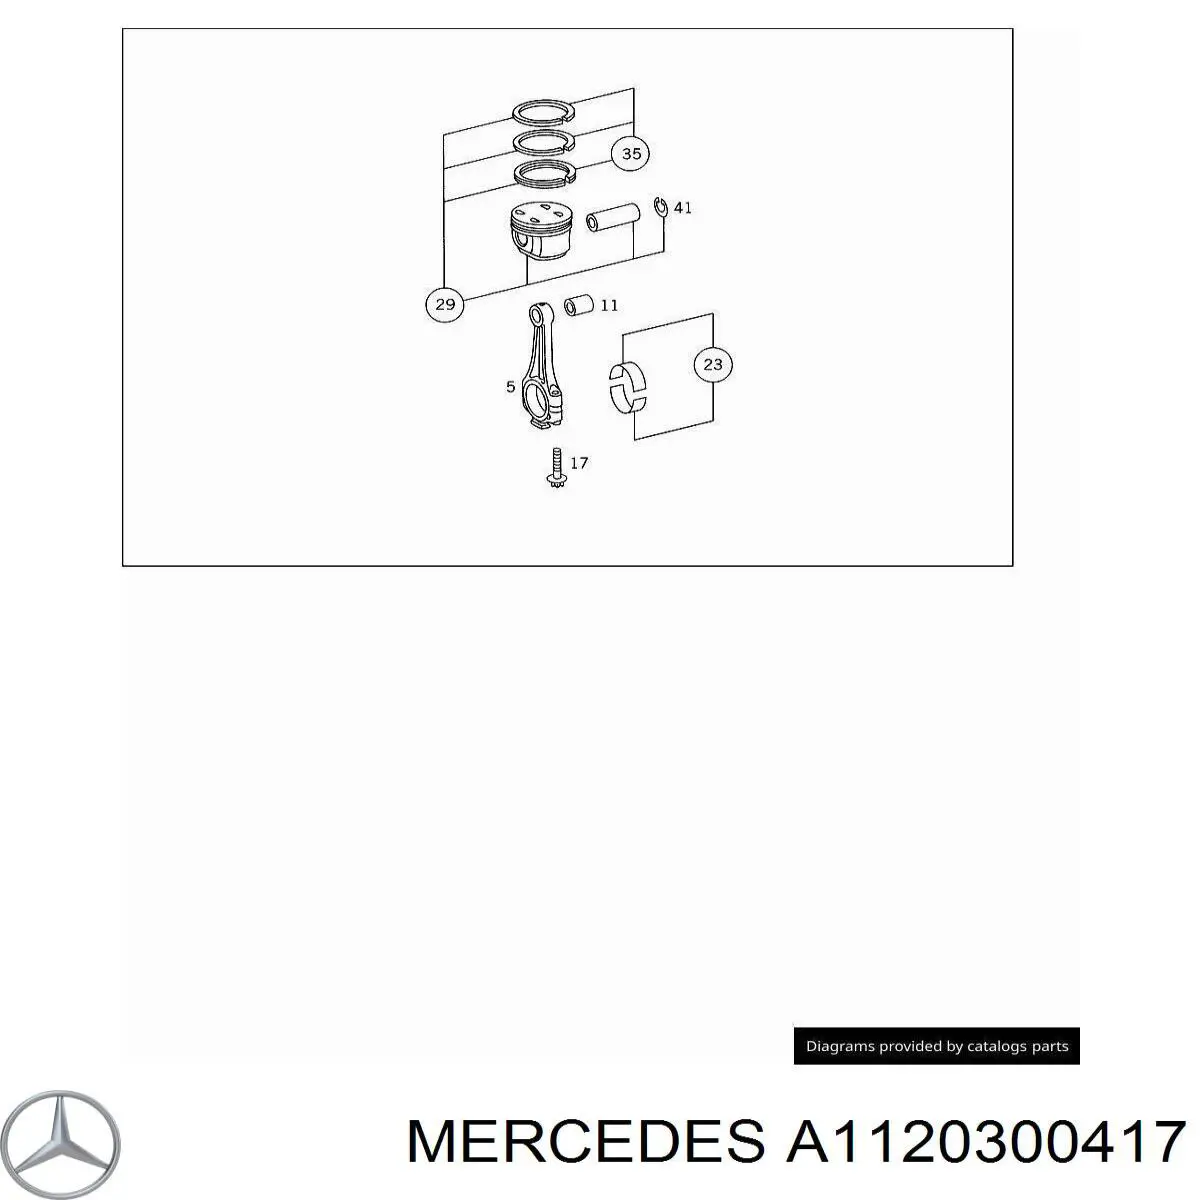 A1120300417 Mercedes pistão do kit para 1 cilindro, std